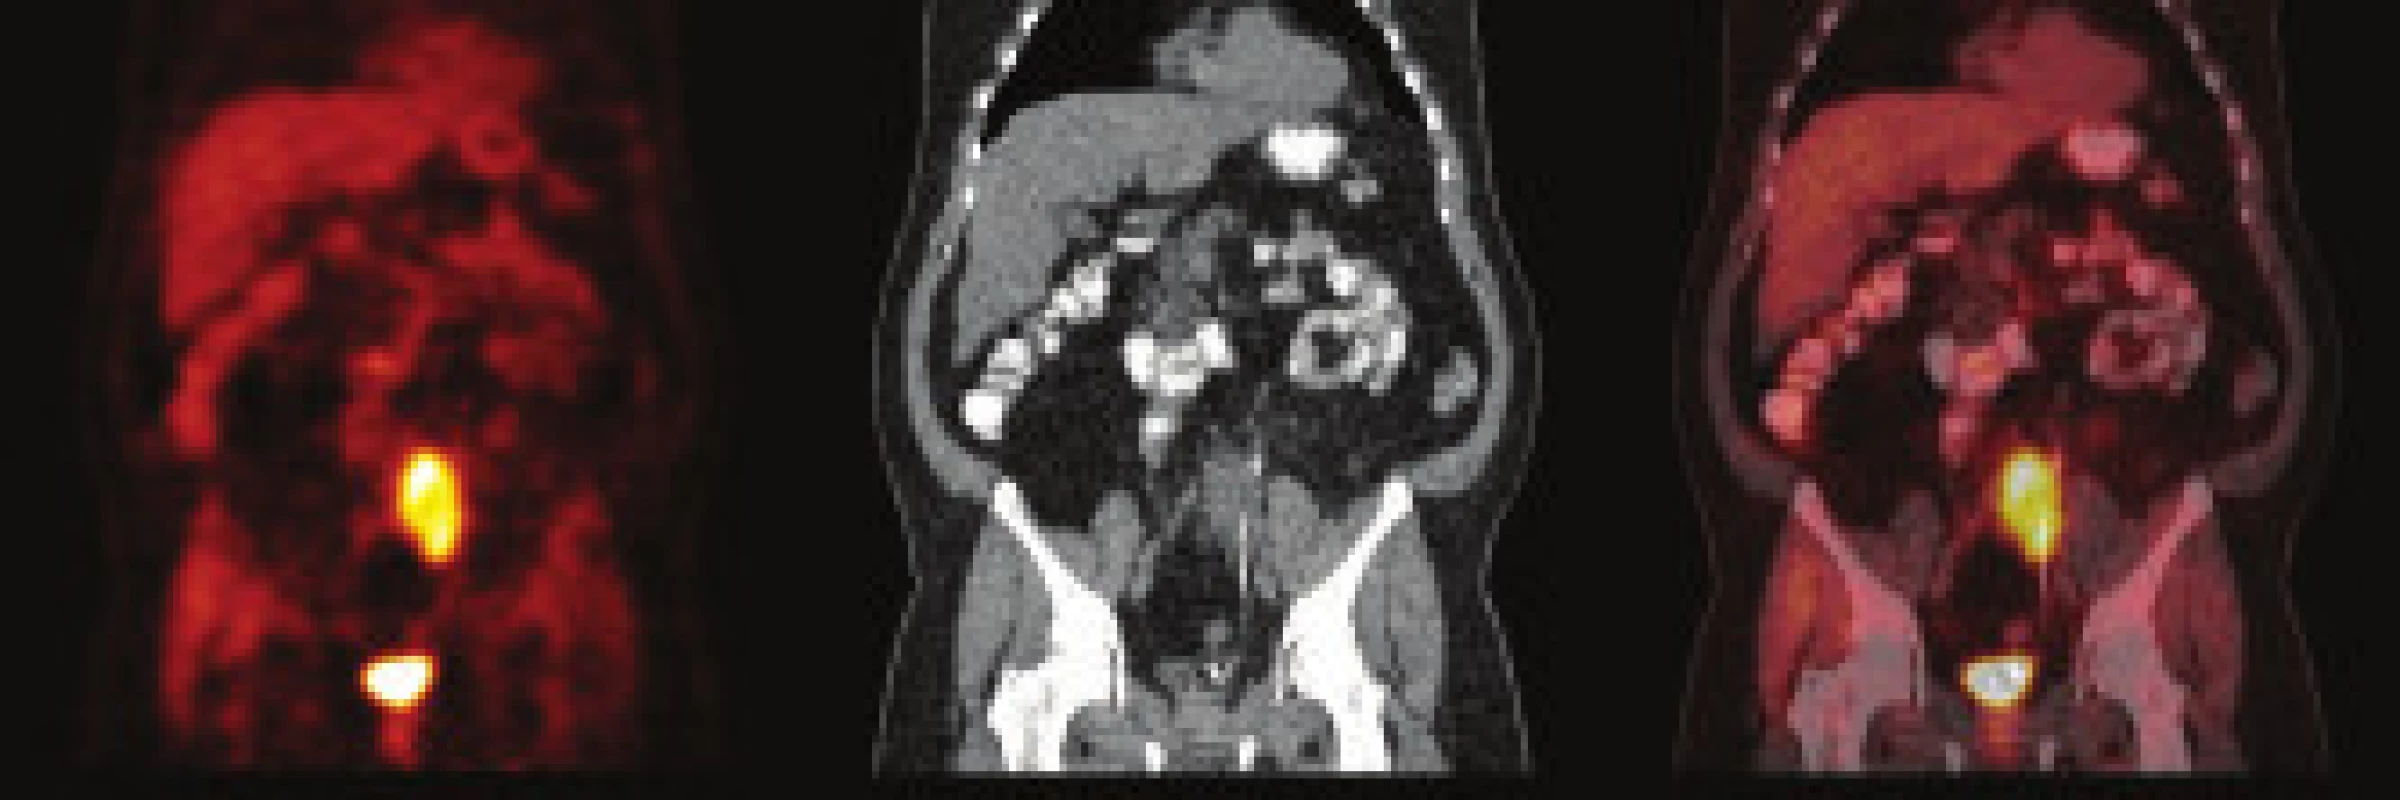 PET/CT pacienta – kazuistika 2. Stav před léčbou. Vysoká akumulace FDG se promítá do hypodenzní masy v retroperitoneu. Masou prochází ureter, do kterého je zaveden ureterální stent.